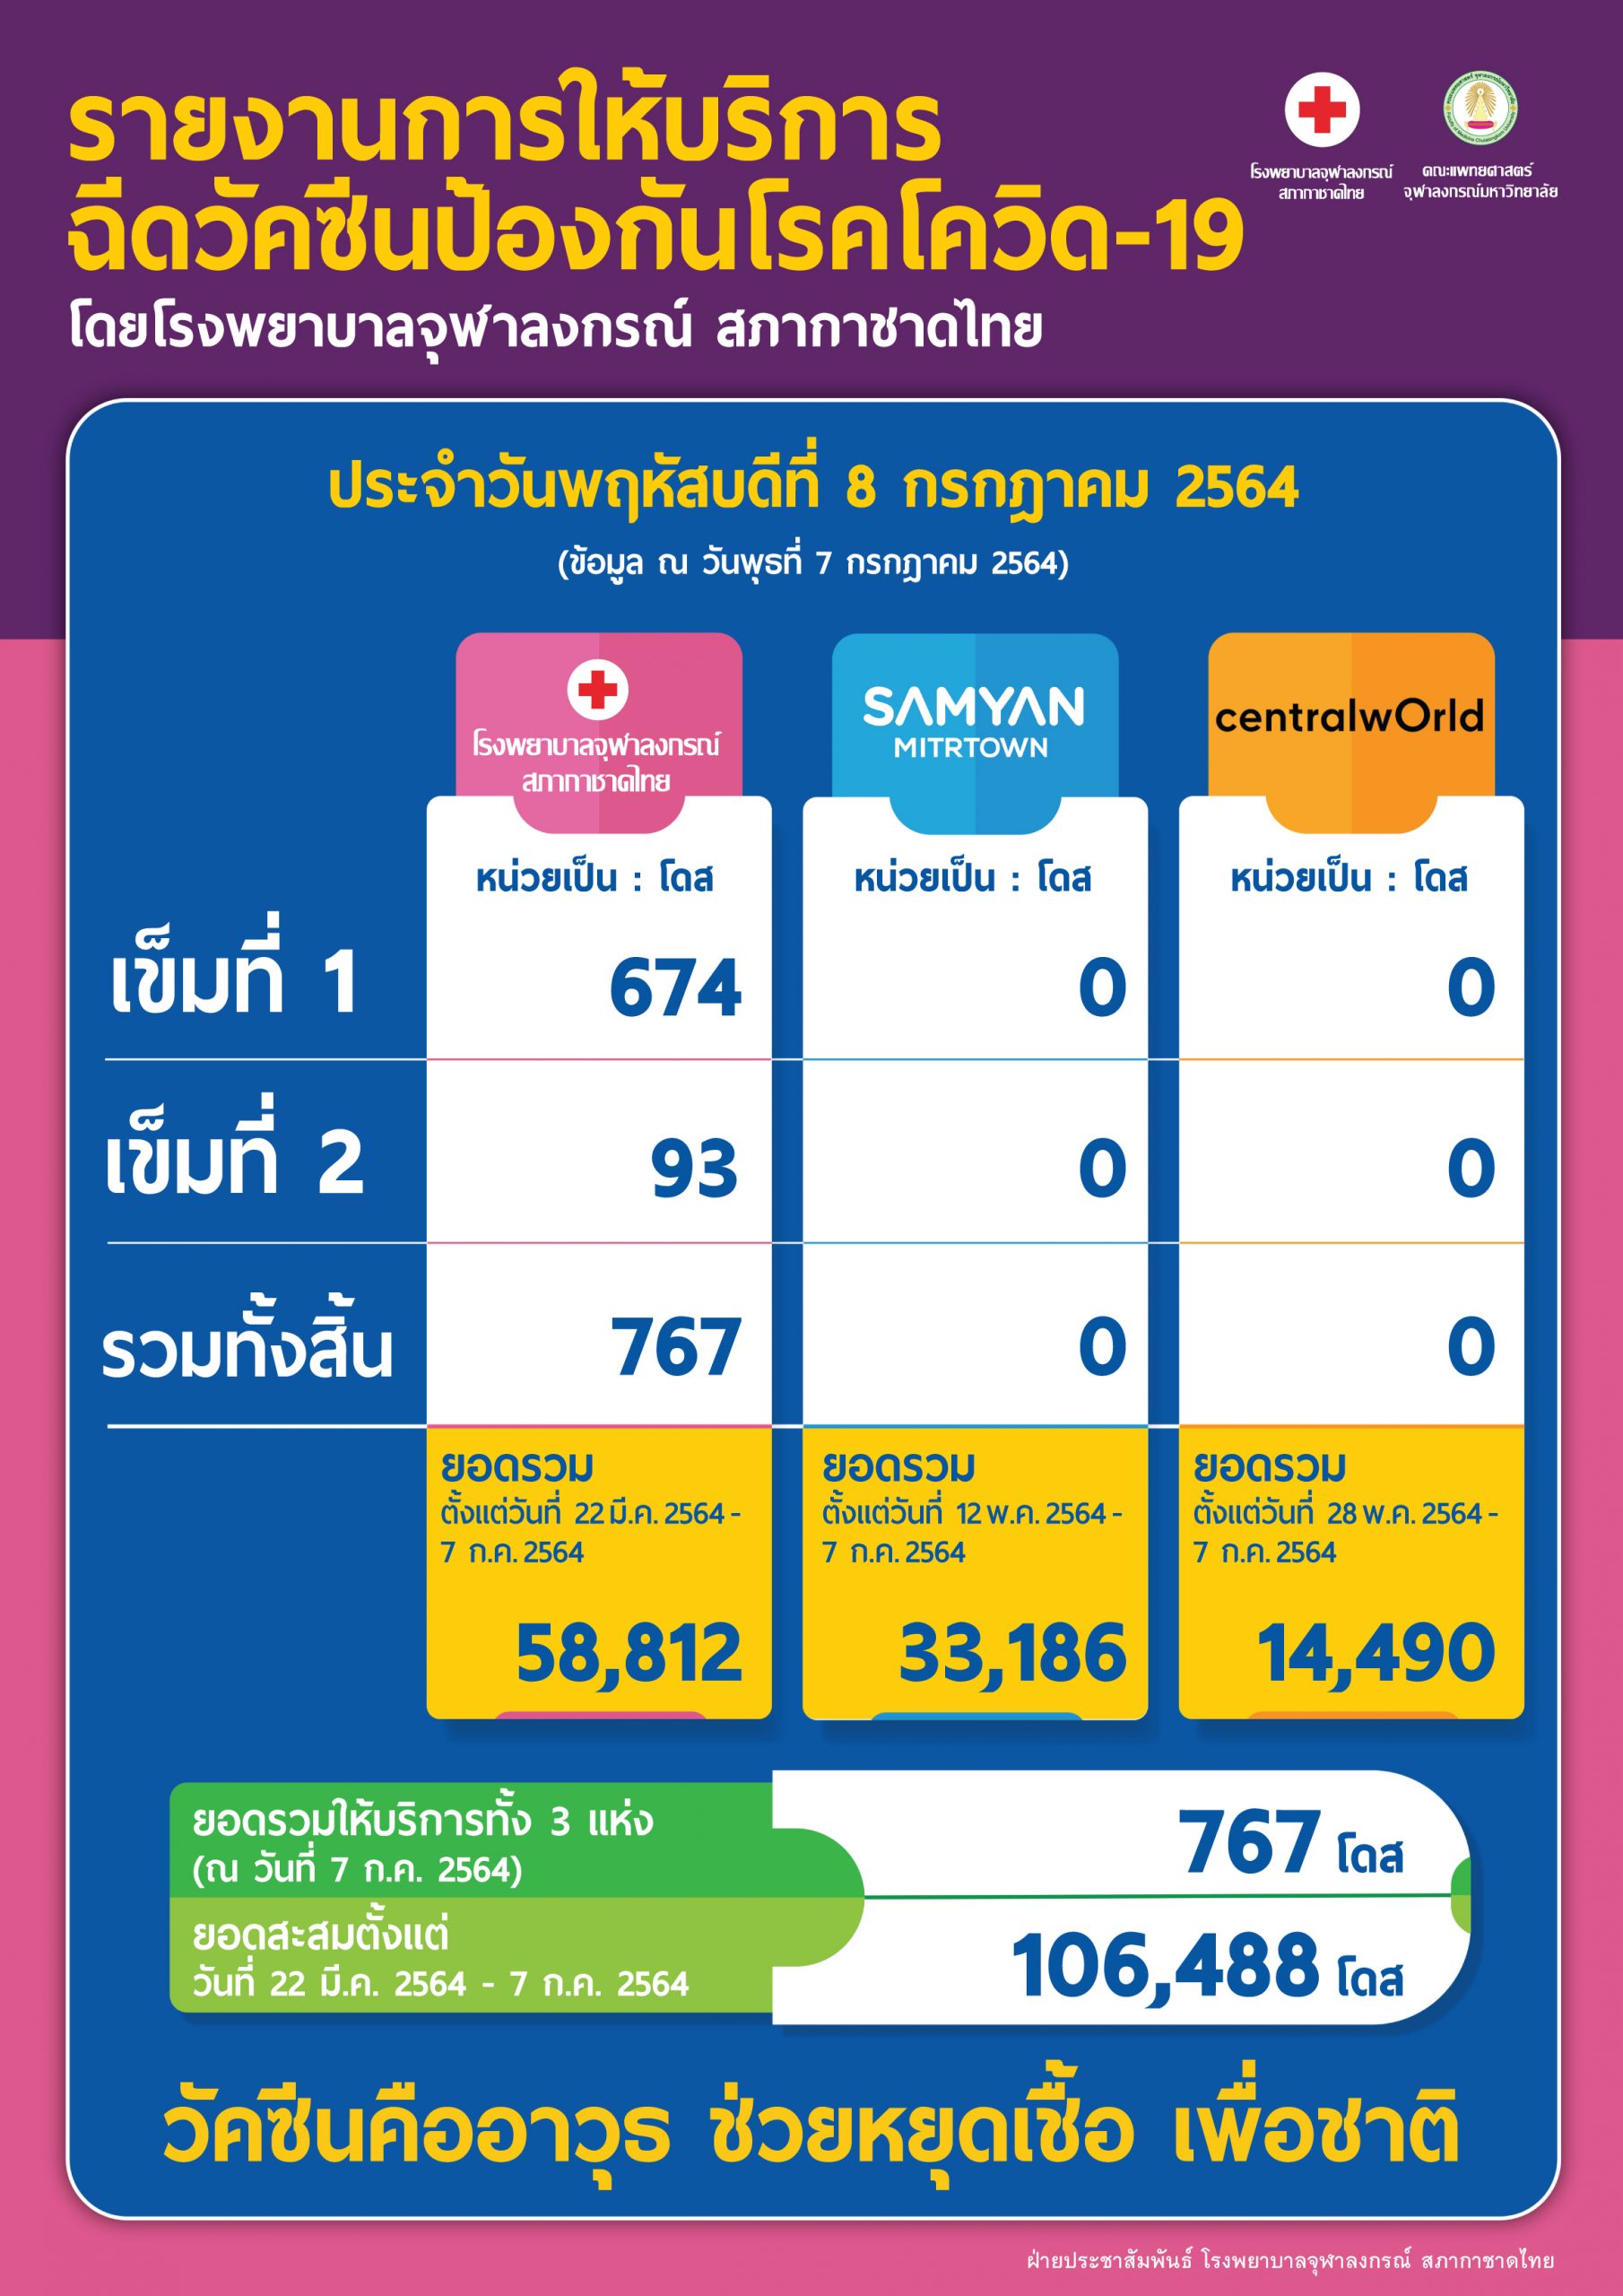 รายงานการให้บริการฉีดวัคซีนป้องกันโรคโควิด-19 โดยโรงพยาบาลจุฬาลงกรณ์ สภากาชาดไทย ประจำวันพฤหัสบดีที่ 8 กรกฎาคม 2564